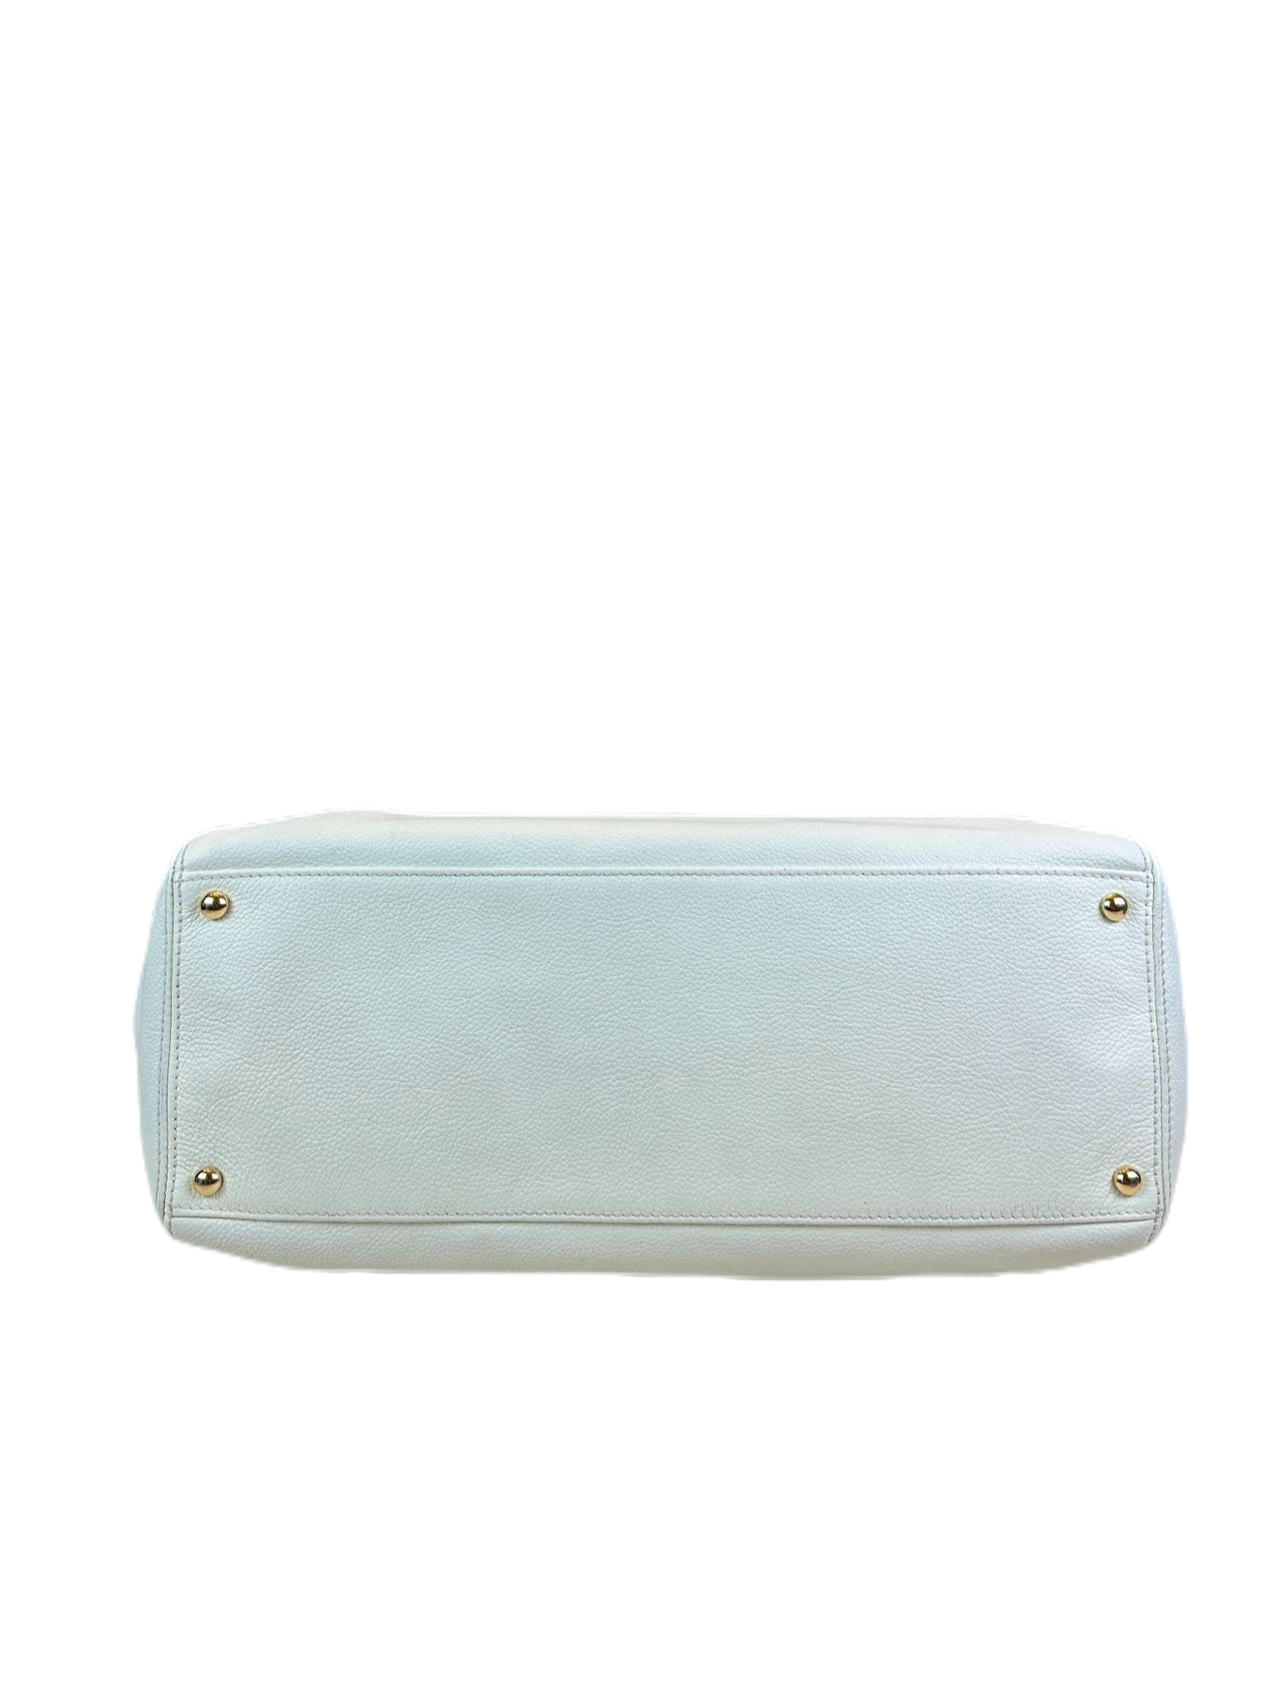 Preloved Chanel Vintage White Leather Handbag Satchel